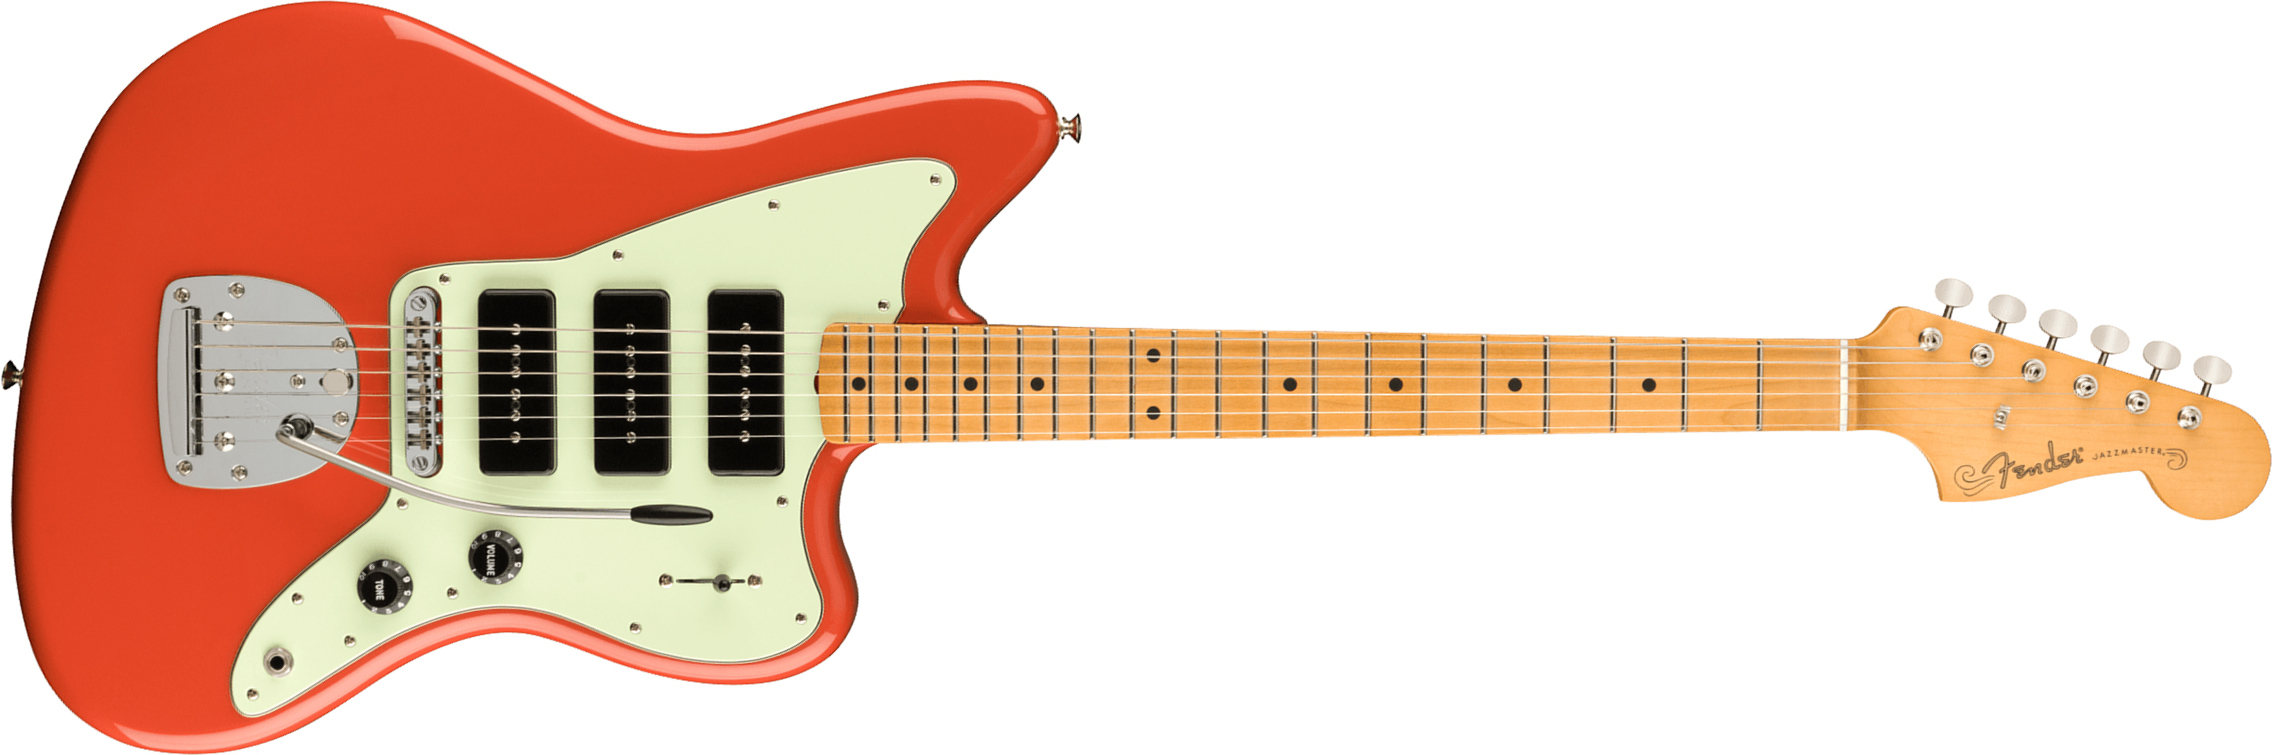 Fender Jazzmaster Noventa Mex Sss Mn +housse - Fiesta Red - Retro-rock elektrische gitaar - Main picture